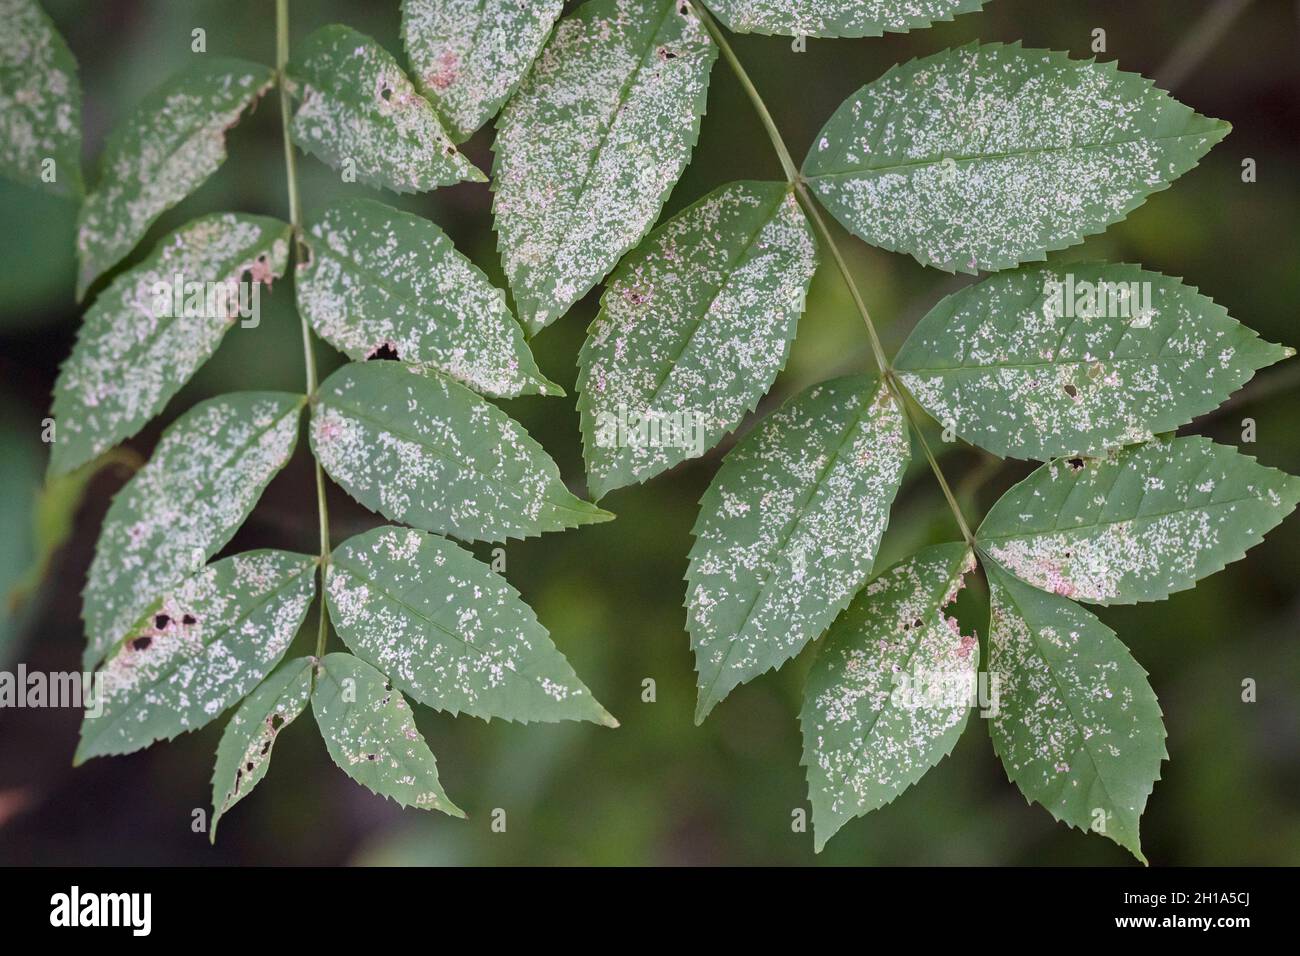 Muffa polverulenta su foglie causate dal fungo della specie Erysiphales. Foto Stock